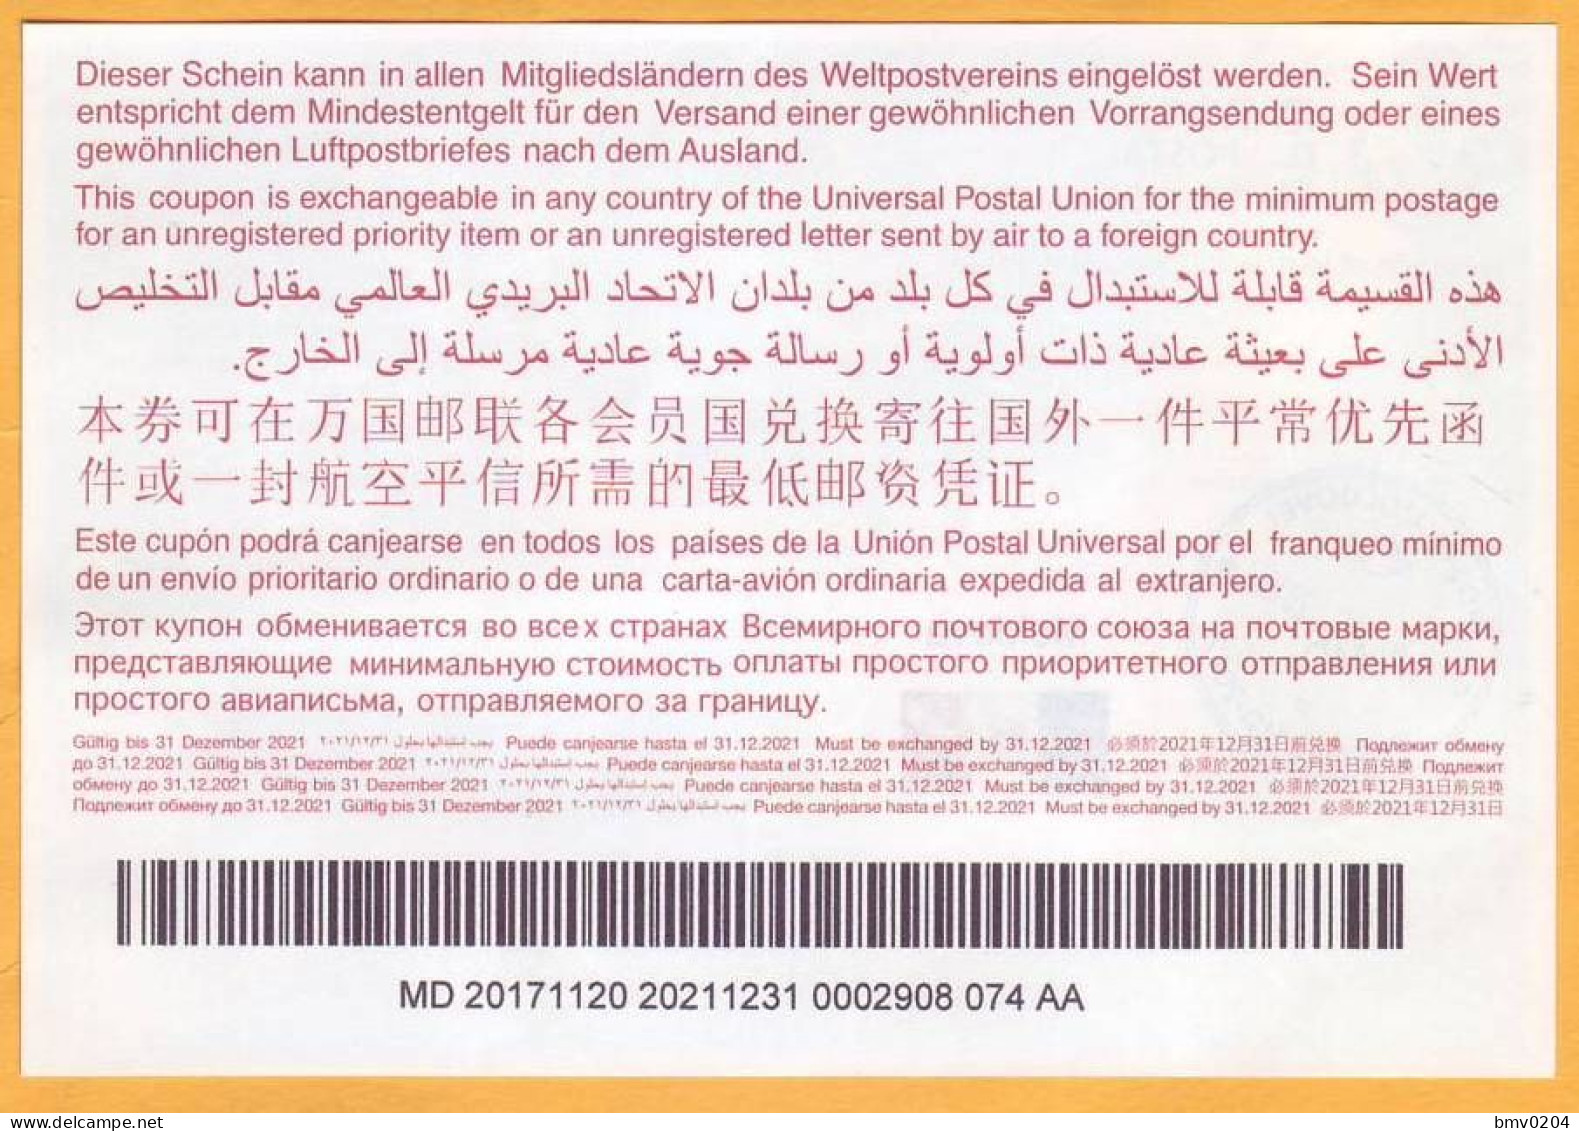 2017  Moldova Moldavie Moldau  Universal Postal Union. International Return Coupon. 0002908 074 AA - UPU (Unione Postale Universale)